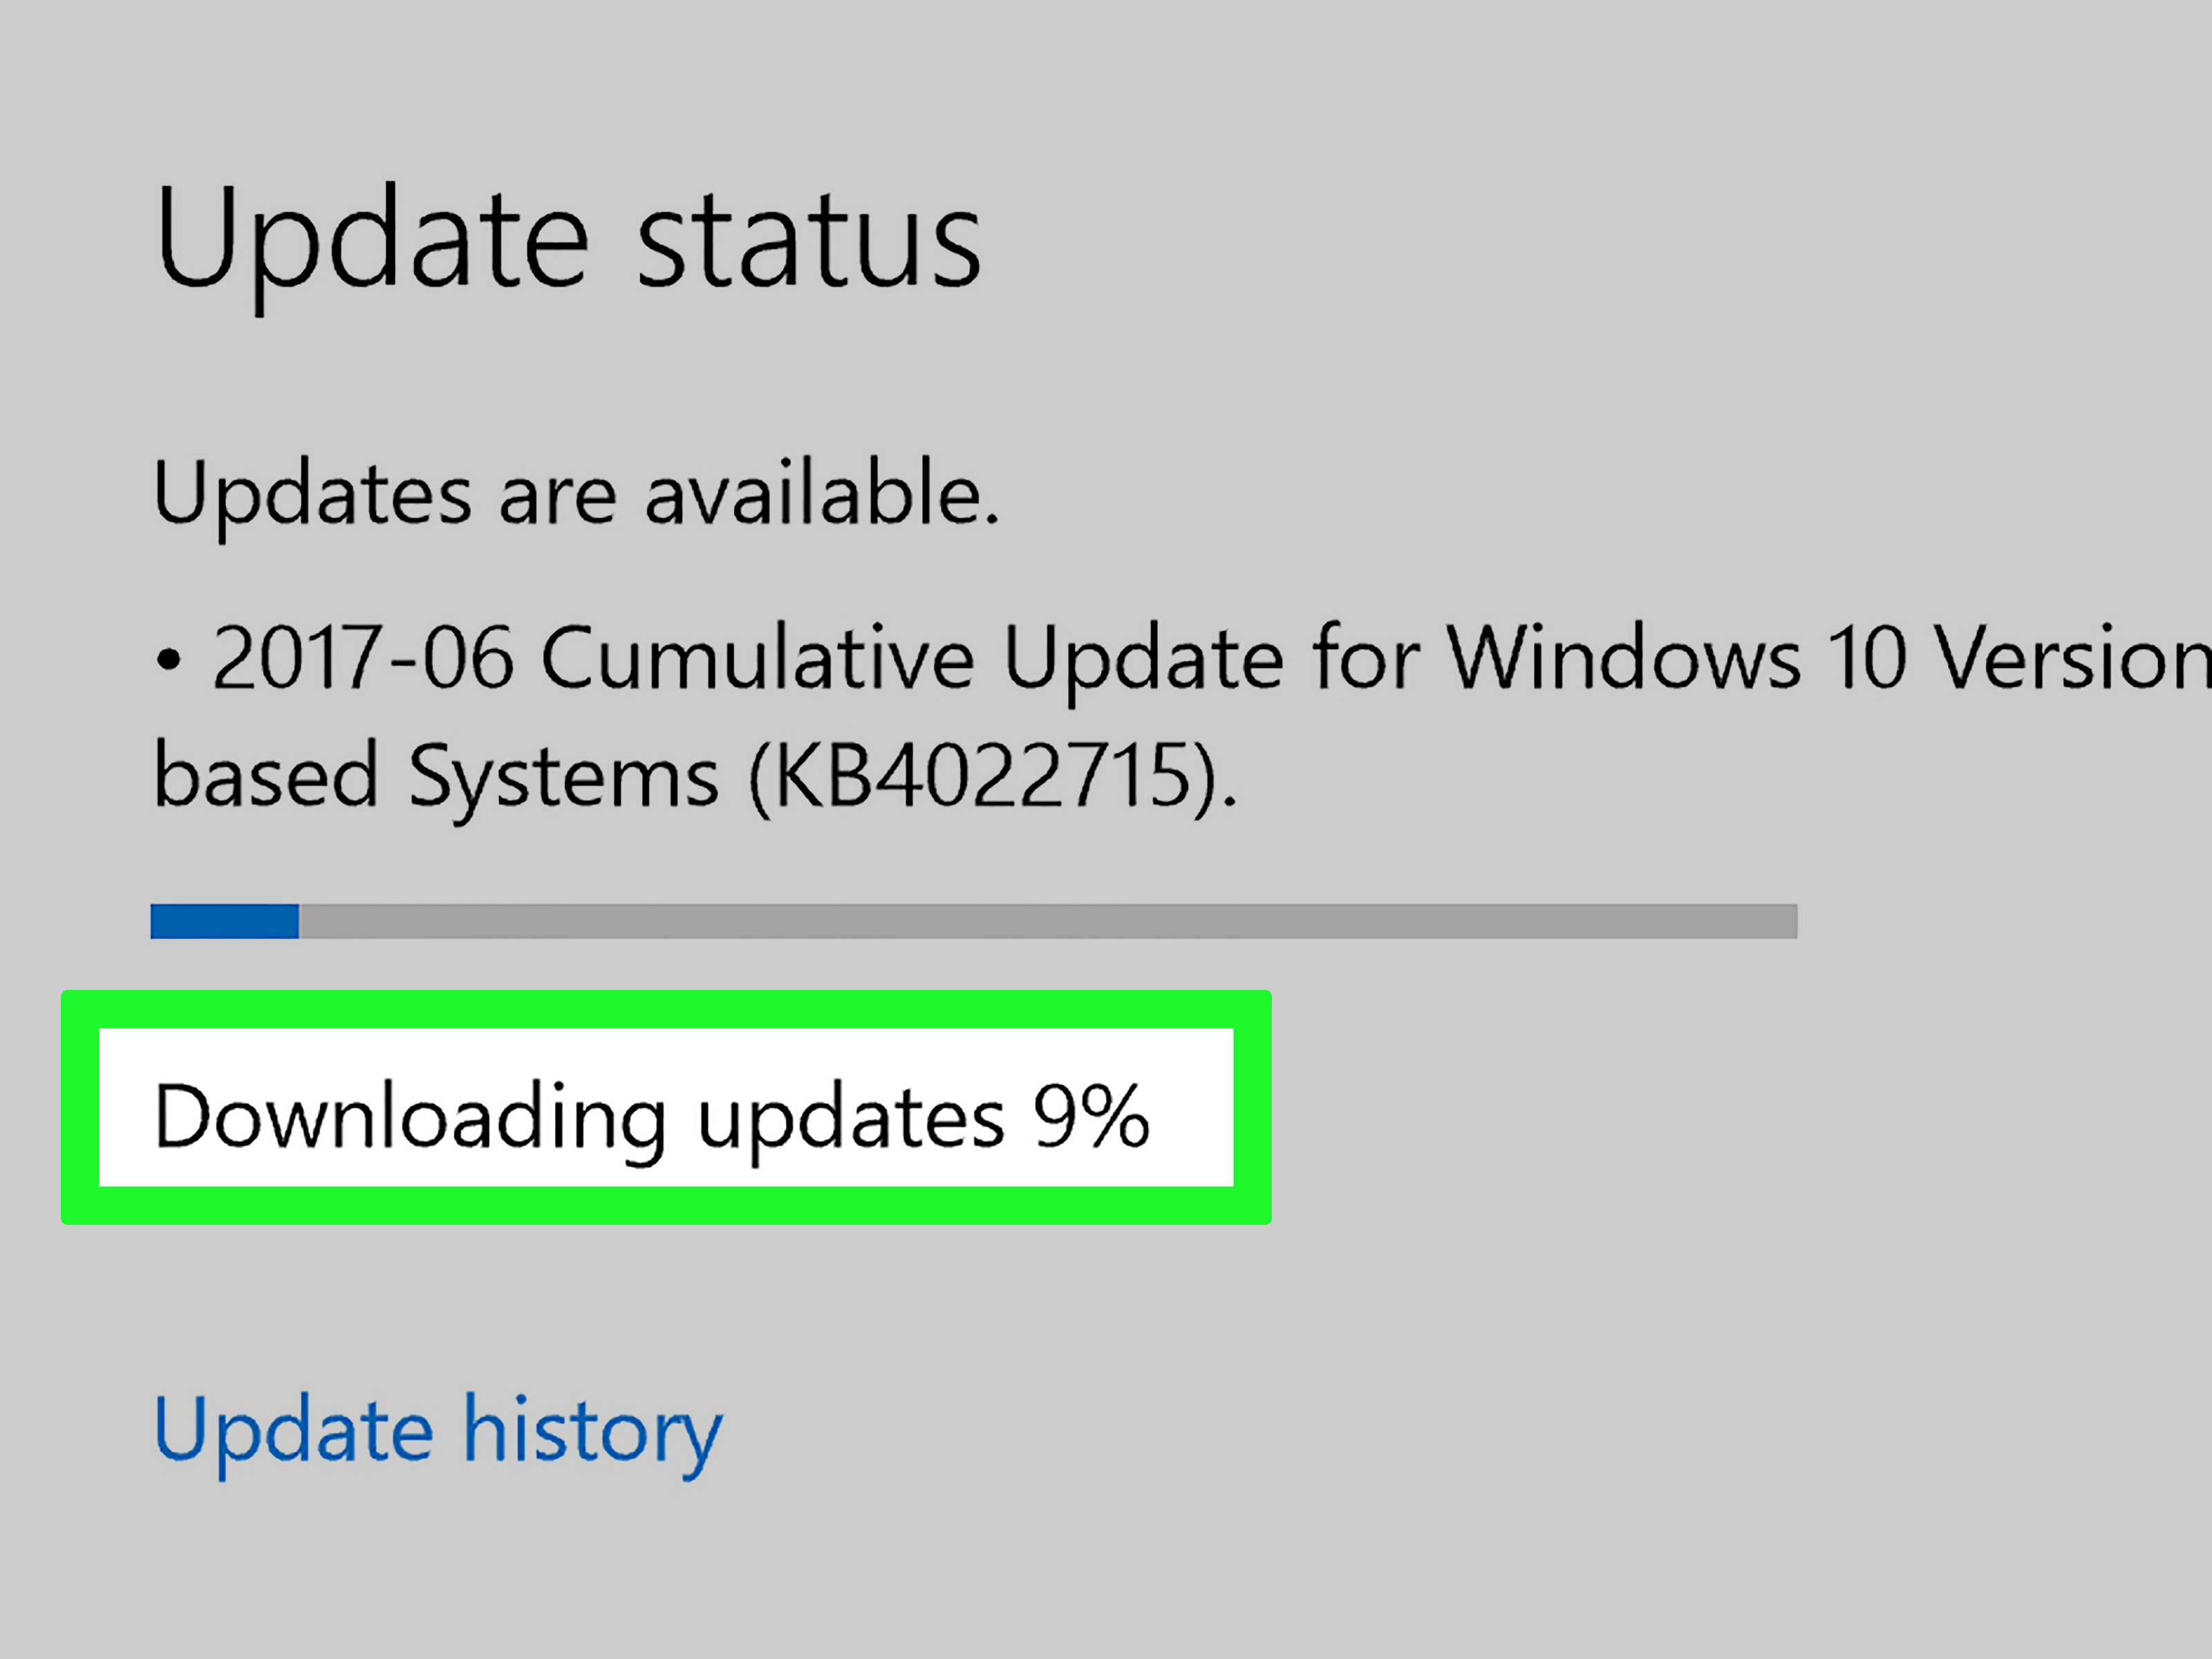 aktualizacja systemu Windows, ale przeglądarka internetowa